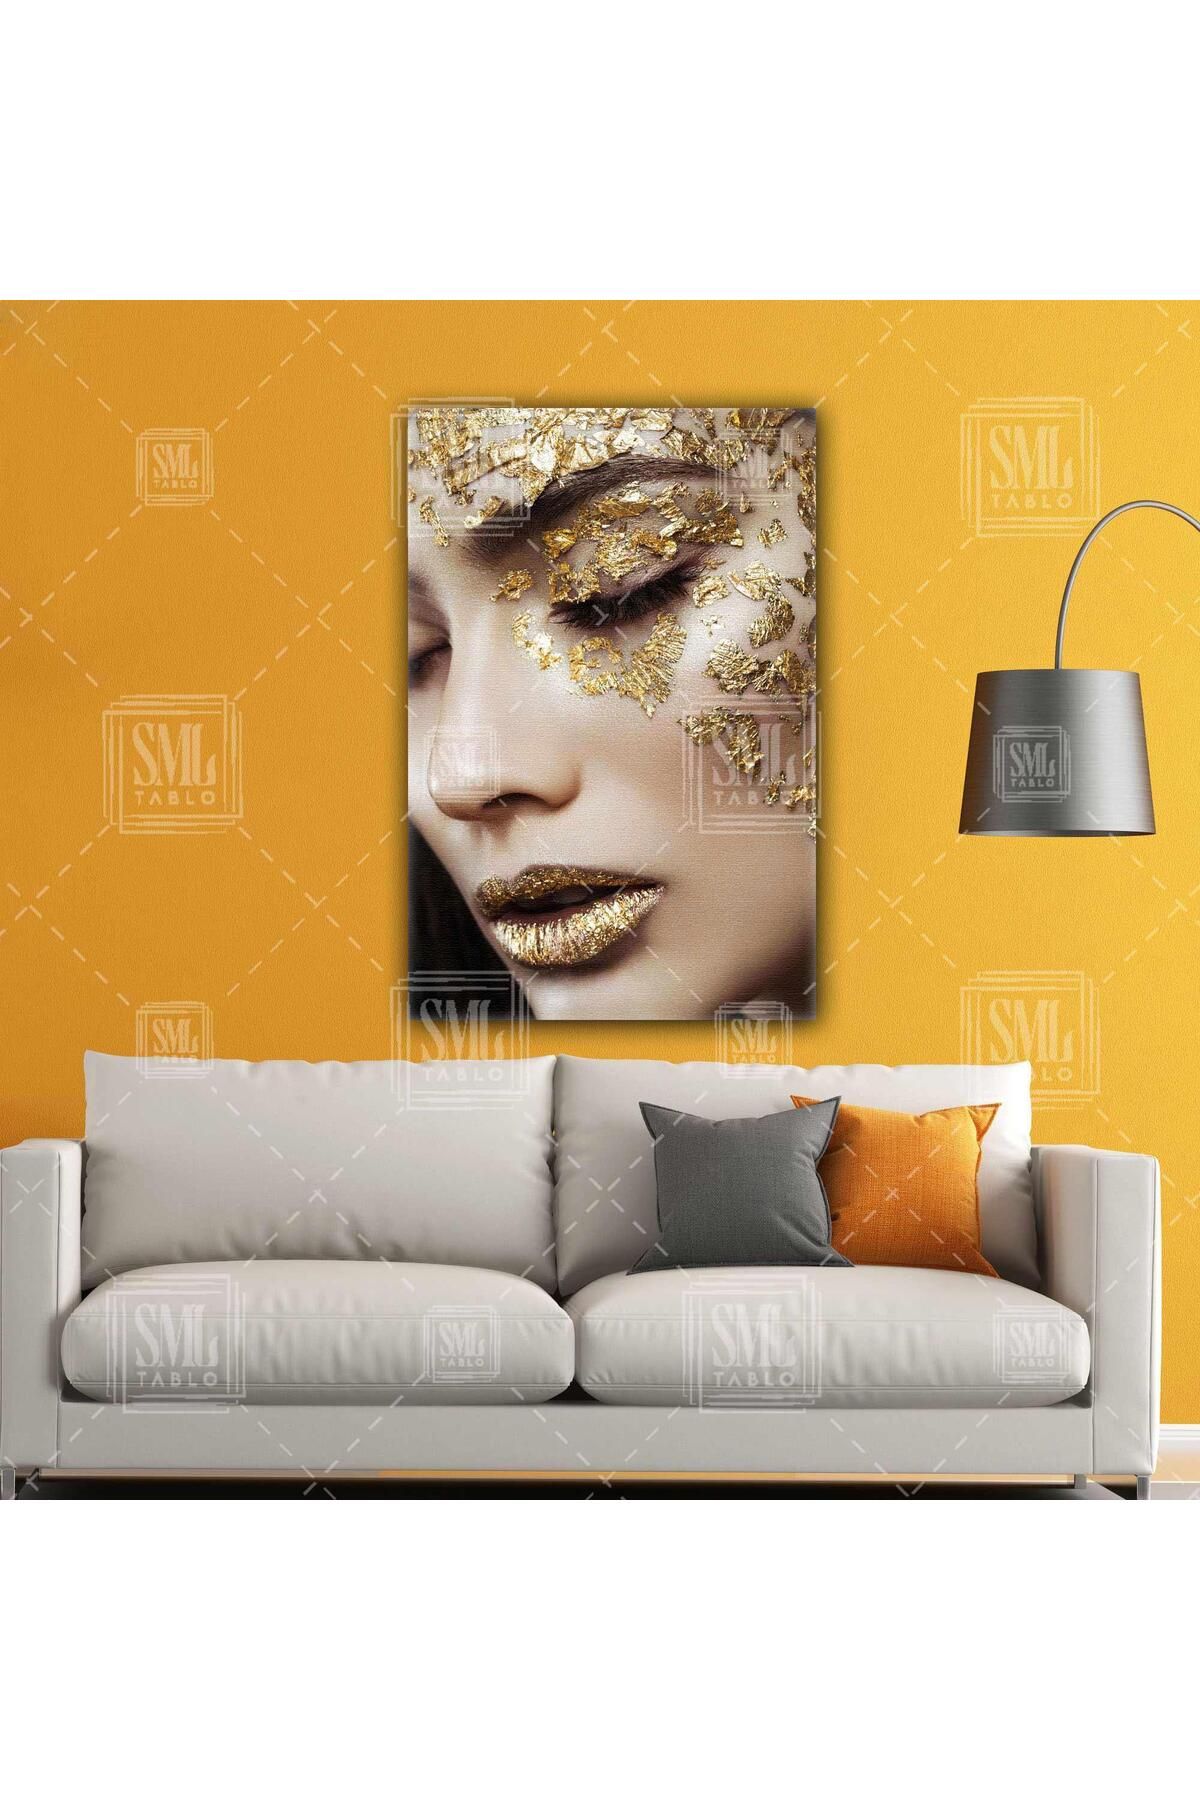 SML TABLO Altın Yüzlü Kadın Model Gold Dudak Makyaj Kuaför Dikey Kanvas Tablo